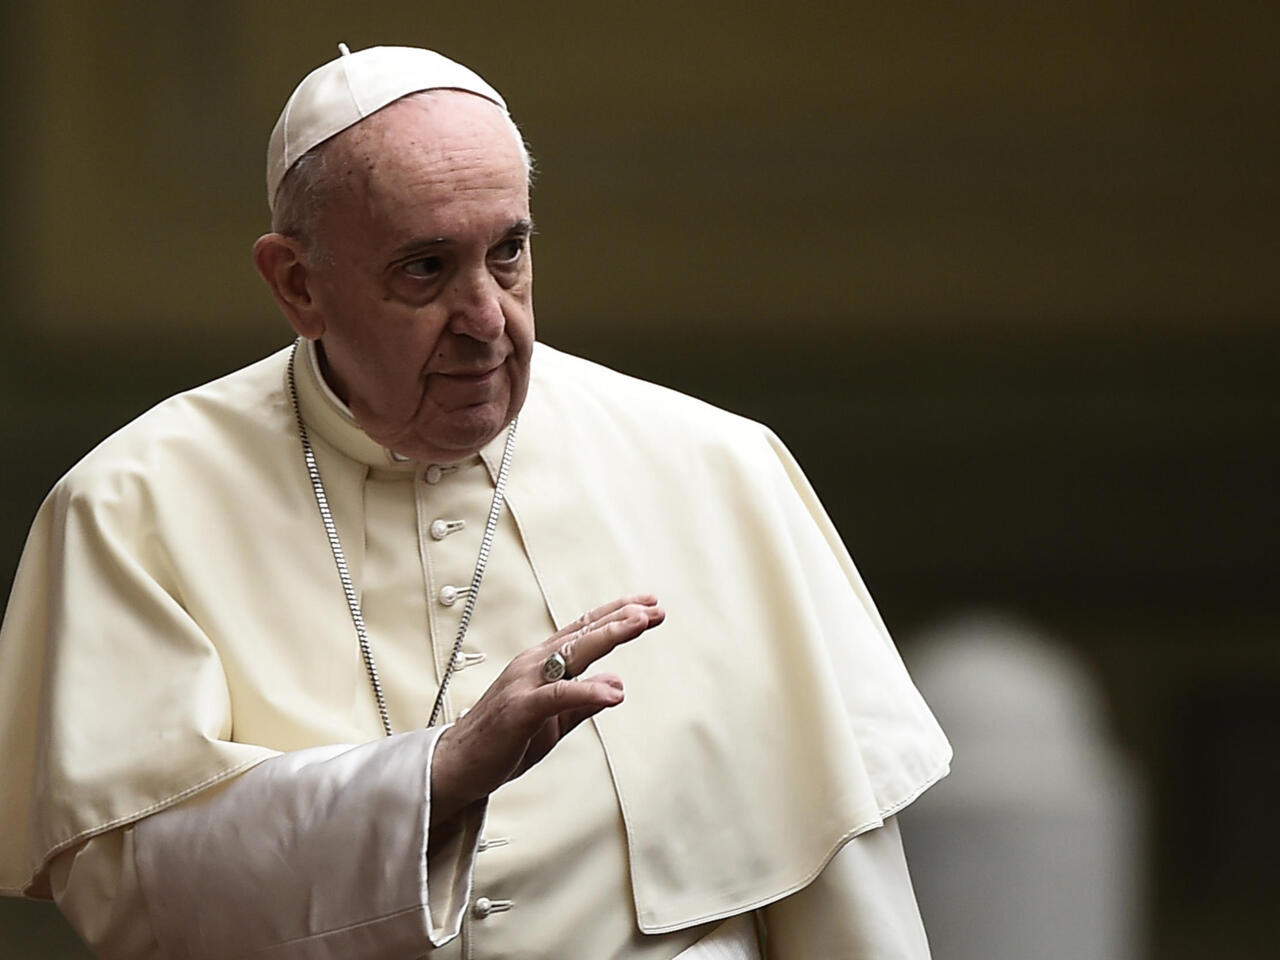 Le Pape François Sous Le Feu Des Critiques Pour Des Propos Sur Les Homosexuels